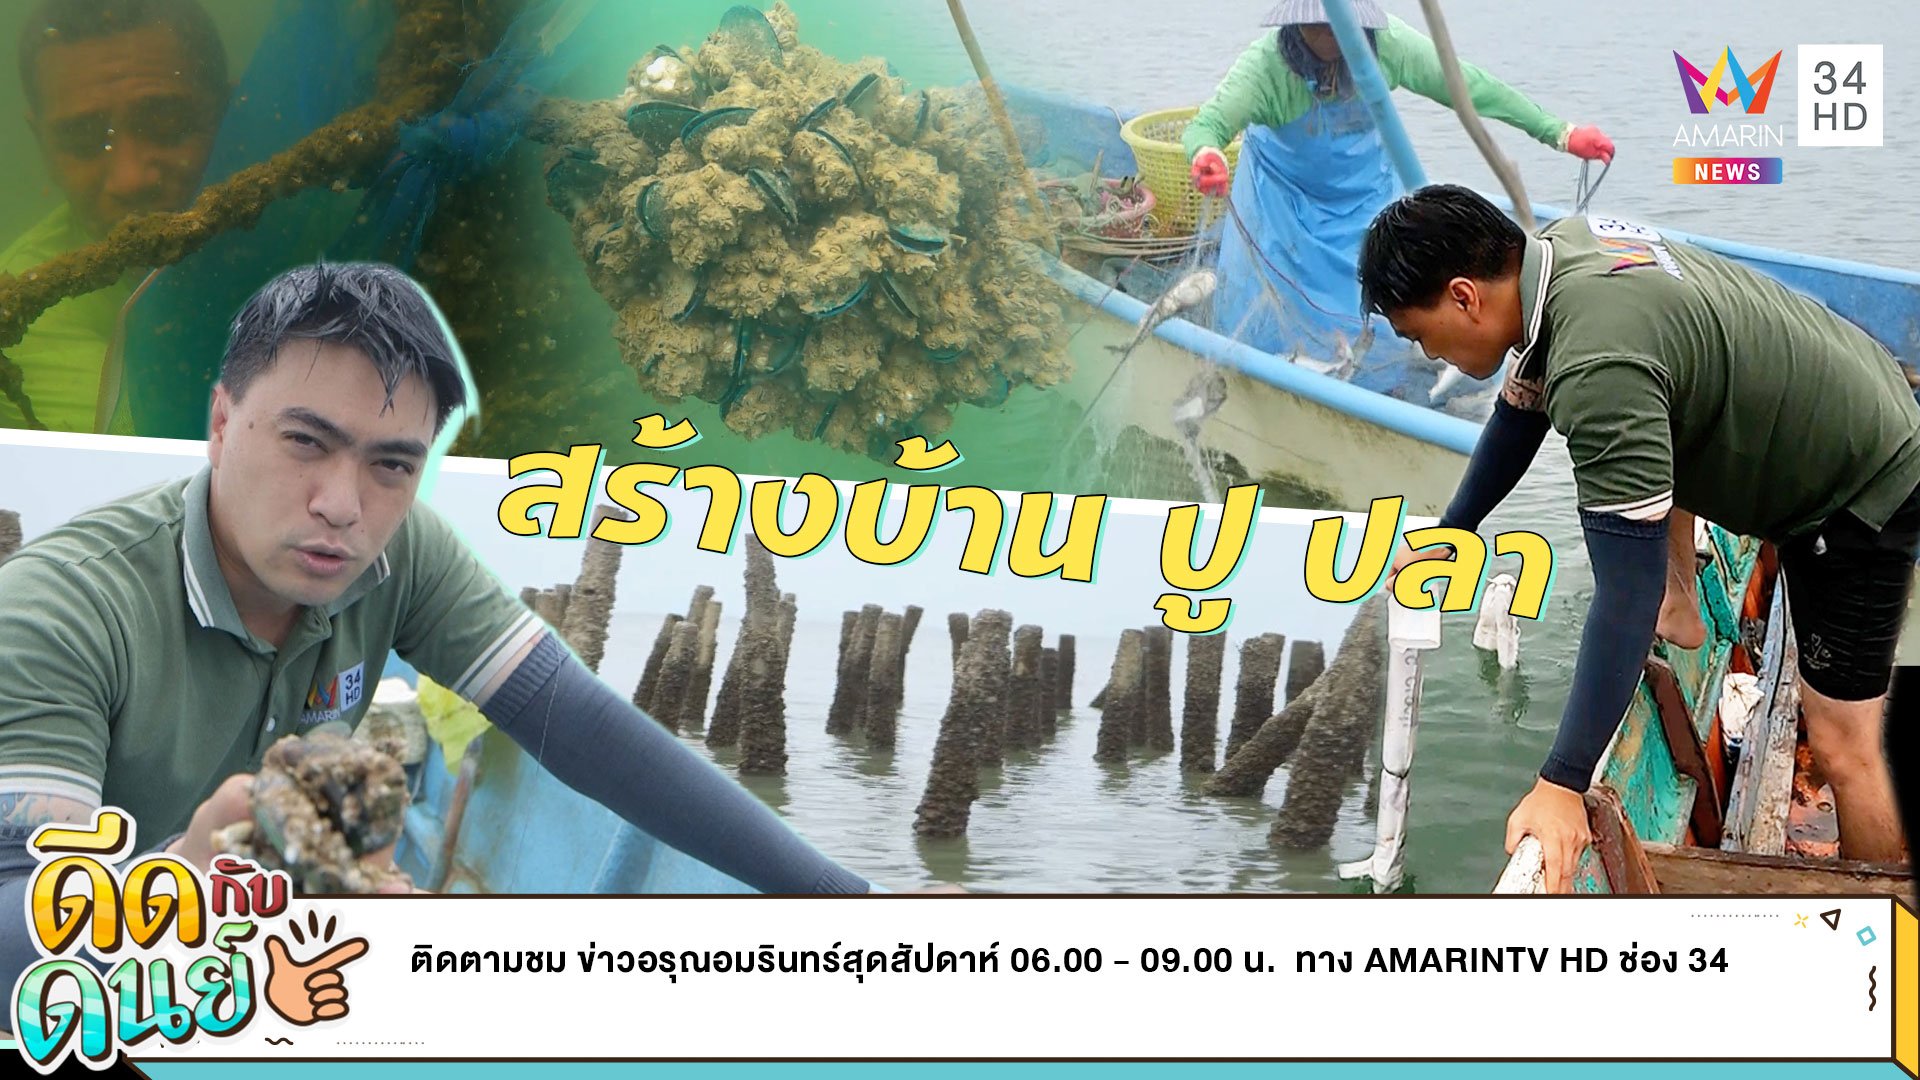 ดีดกับดนย์ |EP.16| สร้างบ้านให้ปลา สร้างศาลาให้ปู | ข่าวอรุณอมรินทร์ | 25 มิ.ย. 65 | AMARIN TVHD34